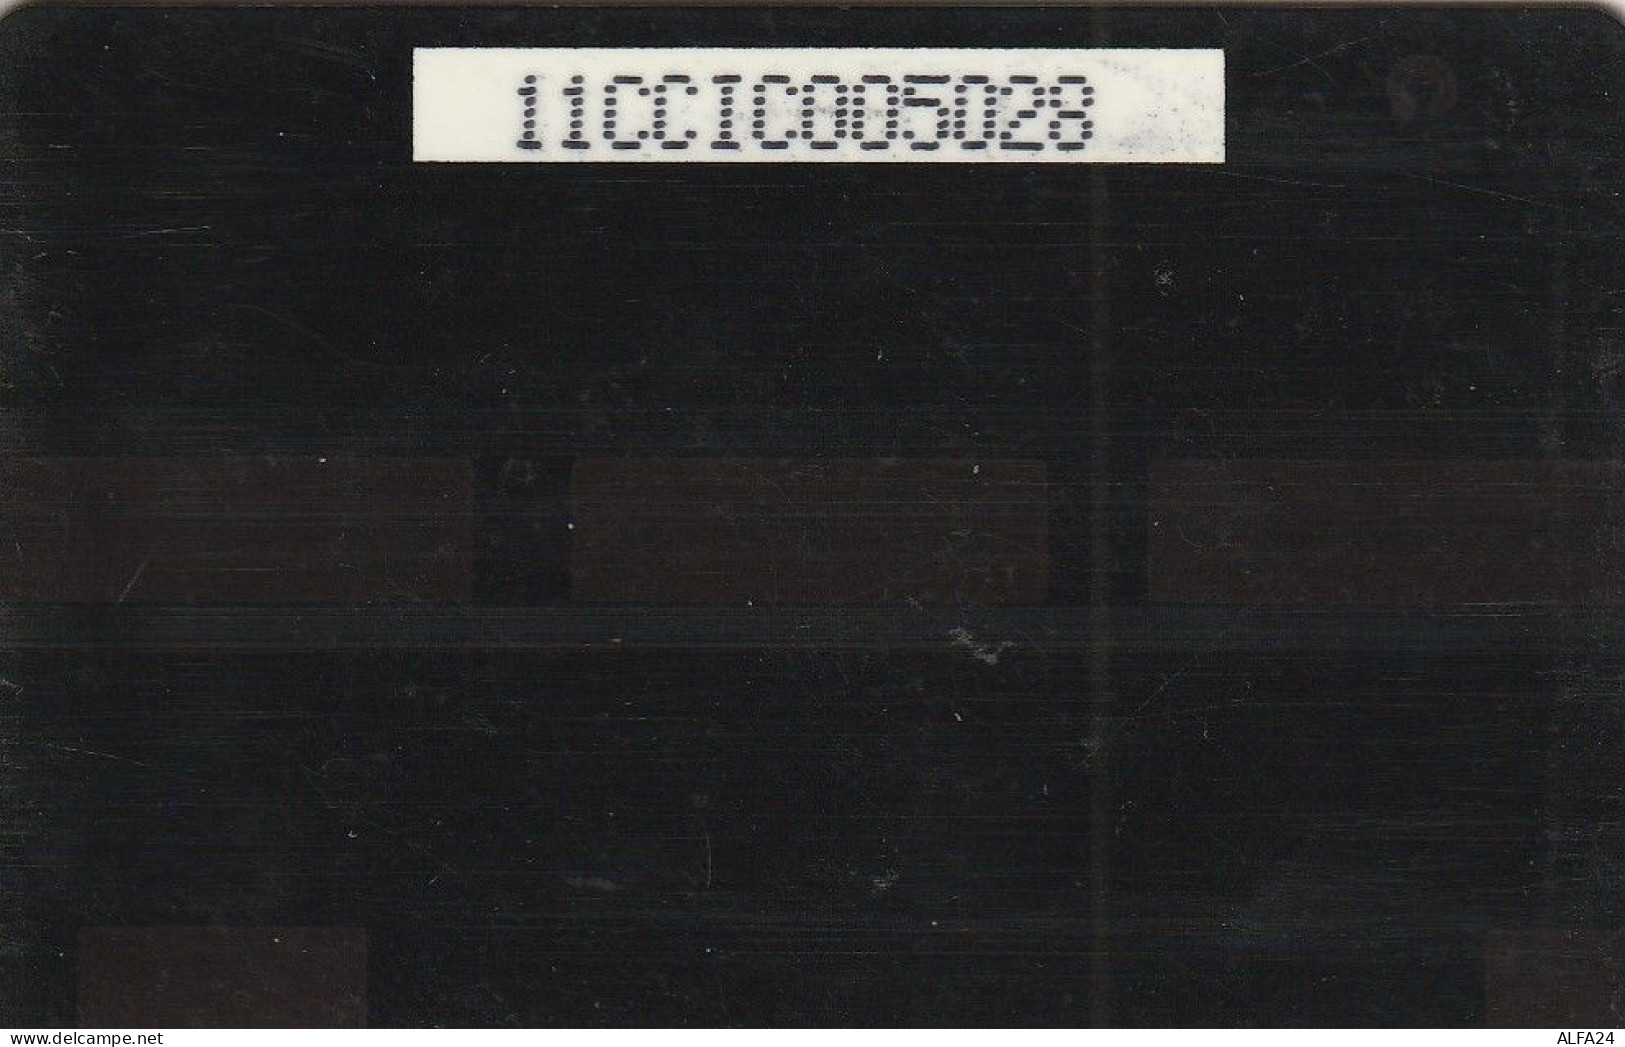 PHONE CARD CAYMAN ISLANDS  (E49.51.7 - Islas Caimán